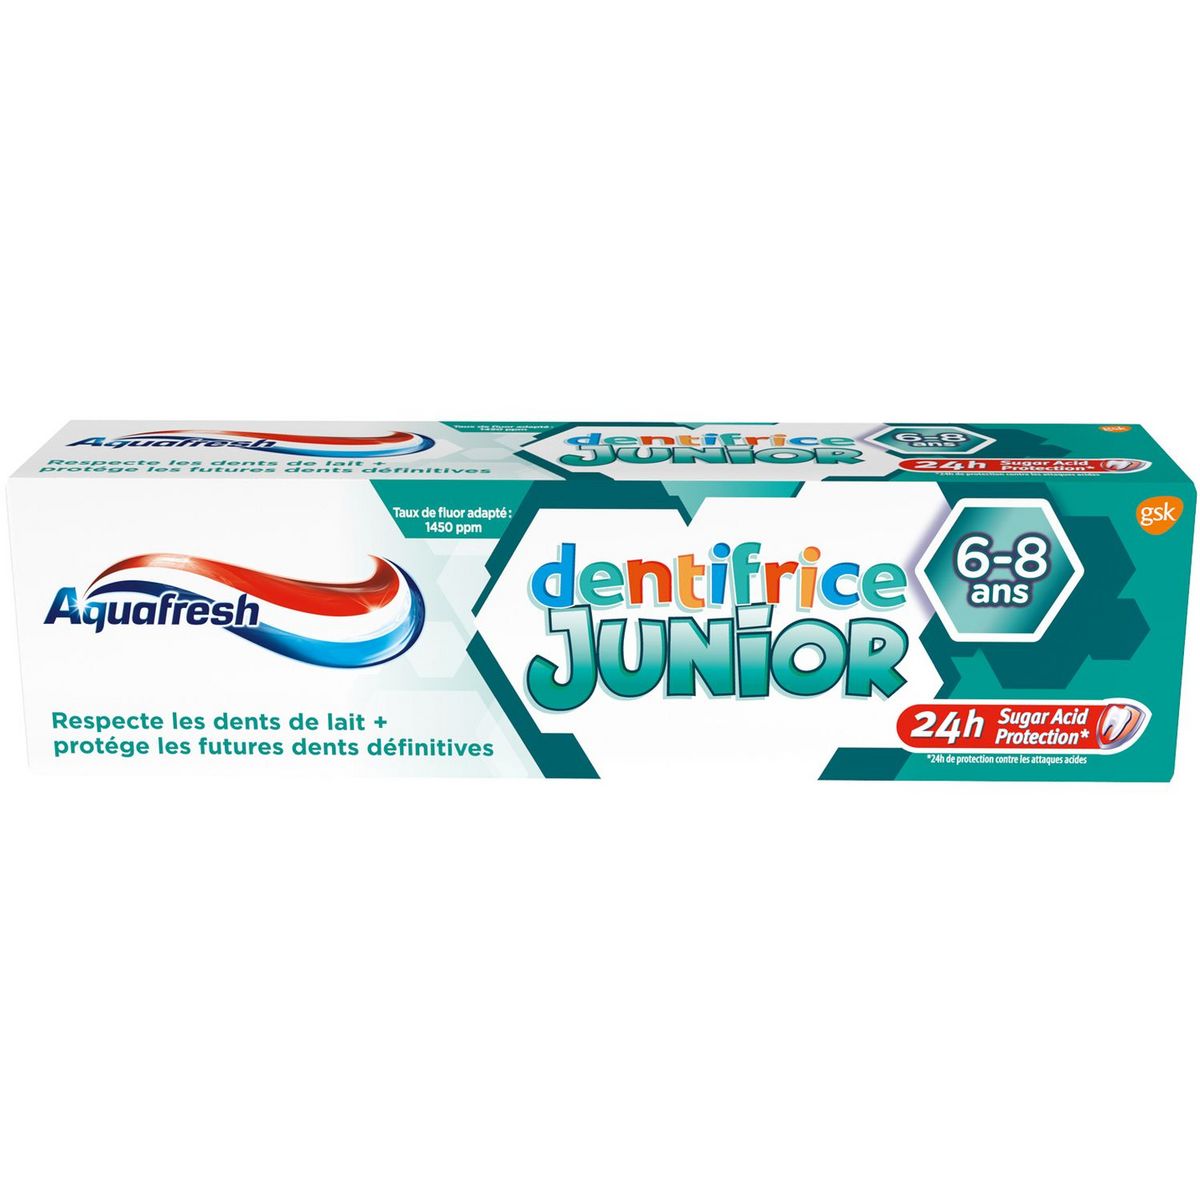 Aquafresh Dentifrice Junior 6-8 Ans 75 ml